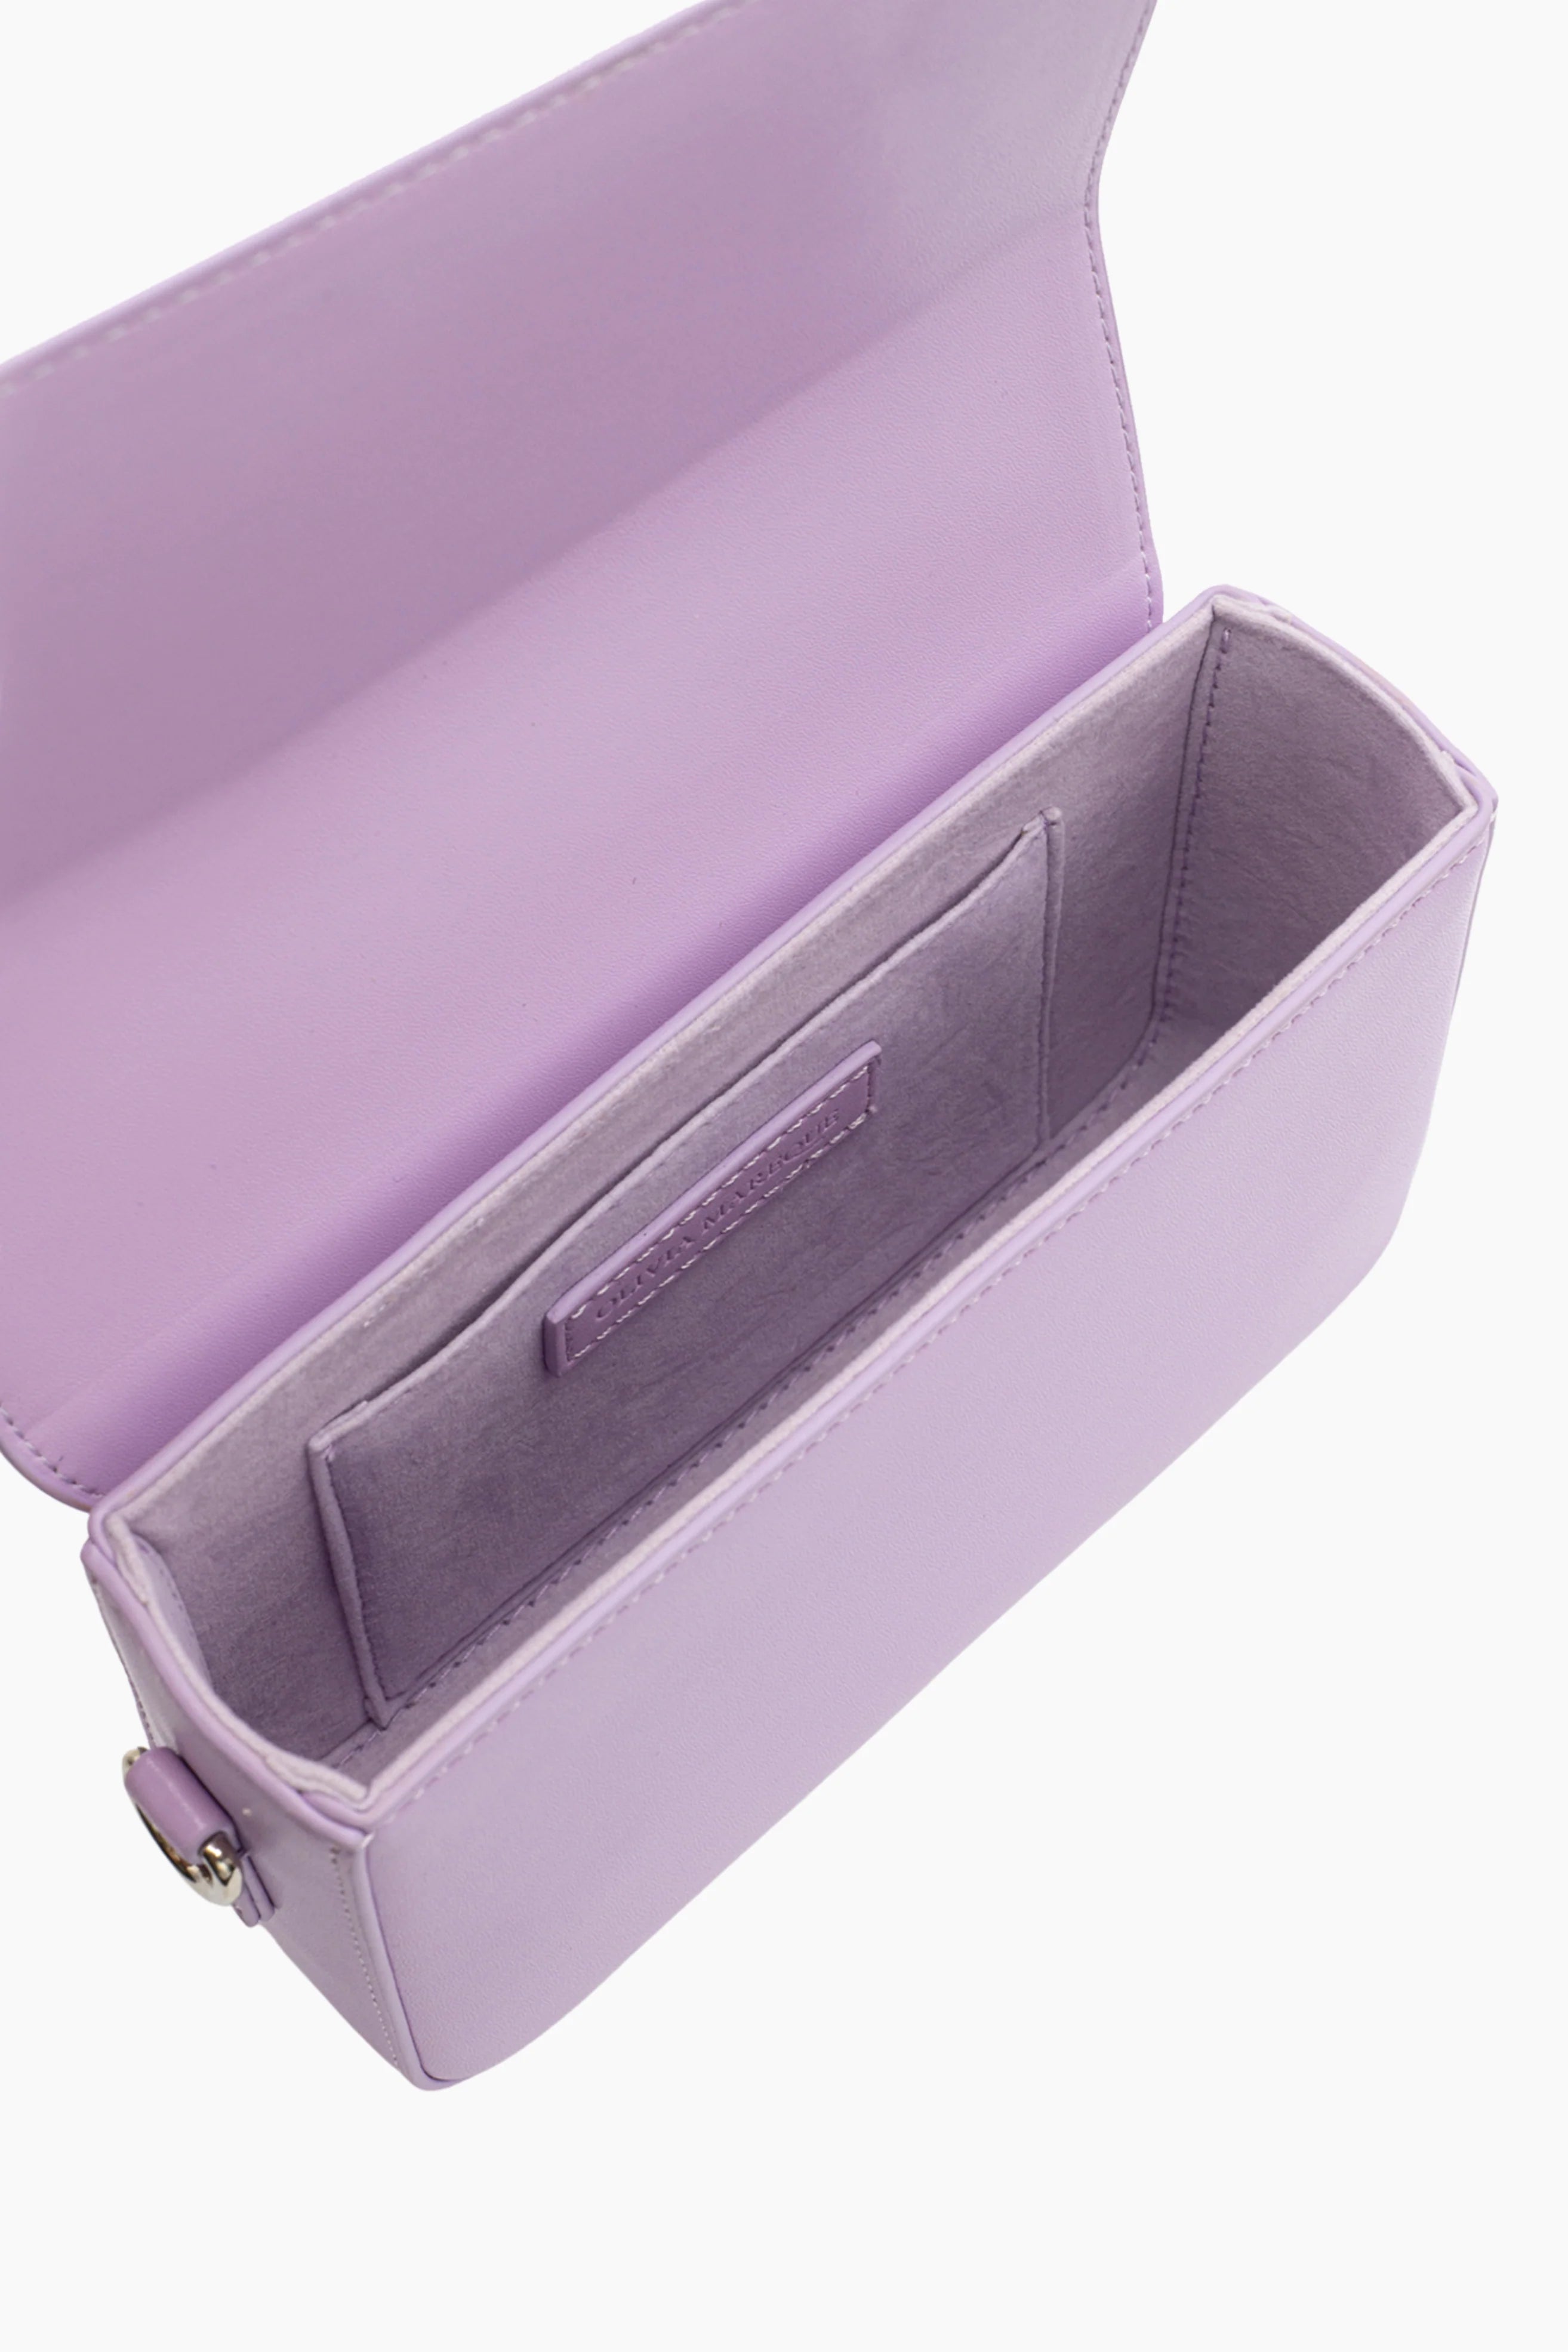 Pantone Lilac Bag